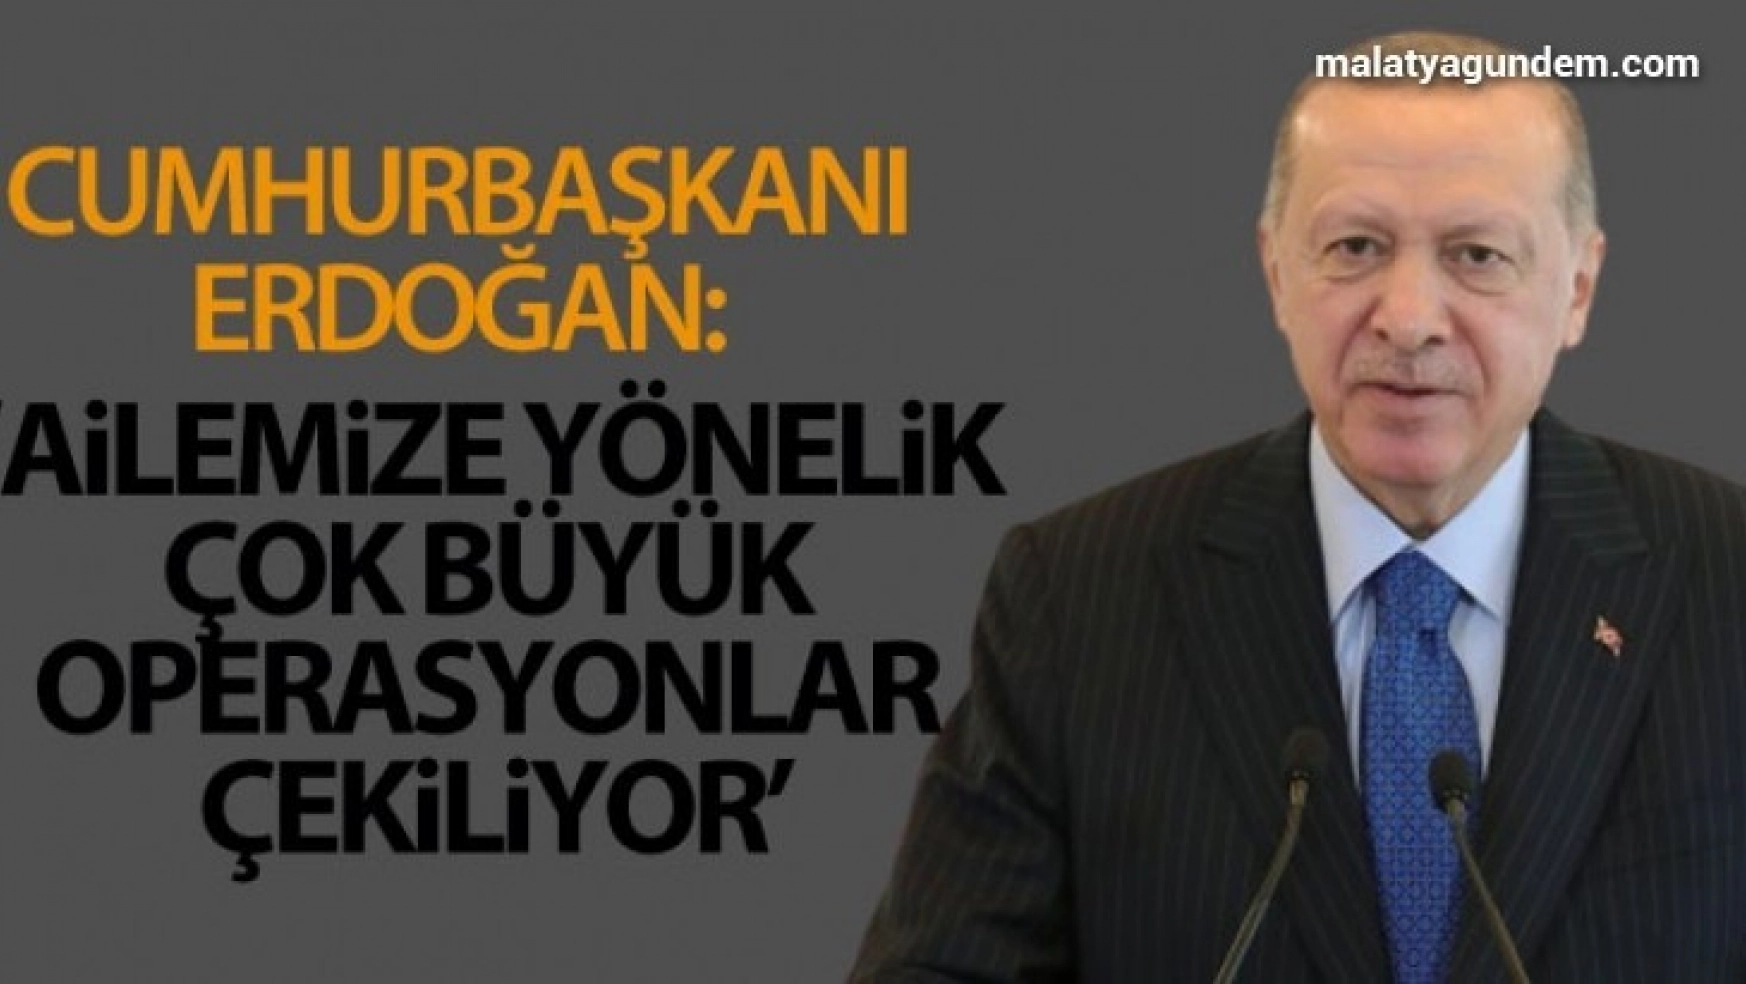 Cumhurbaşkanı Erdoğan: 'Ailemize yönelik çok büyük operasyonlar çekiliyor'